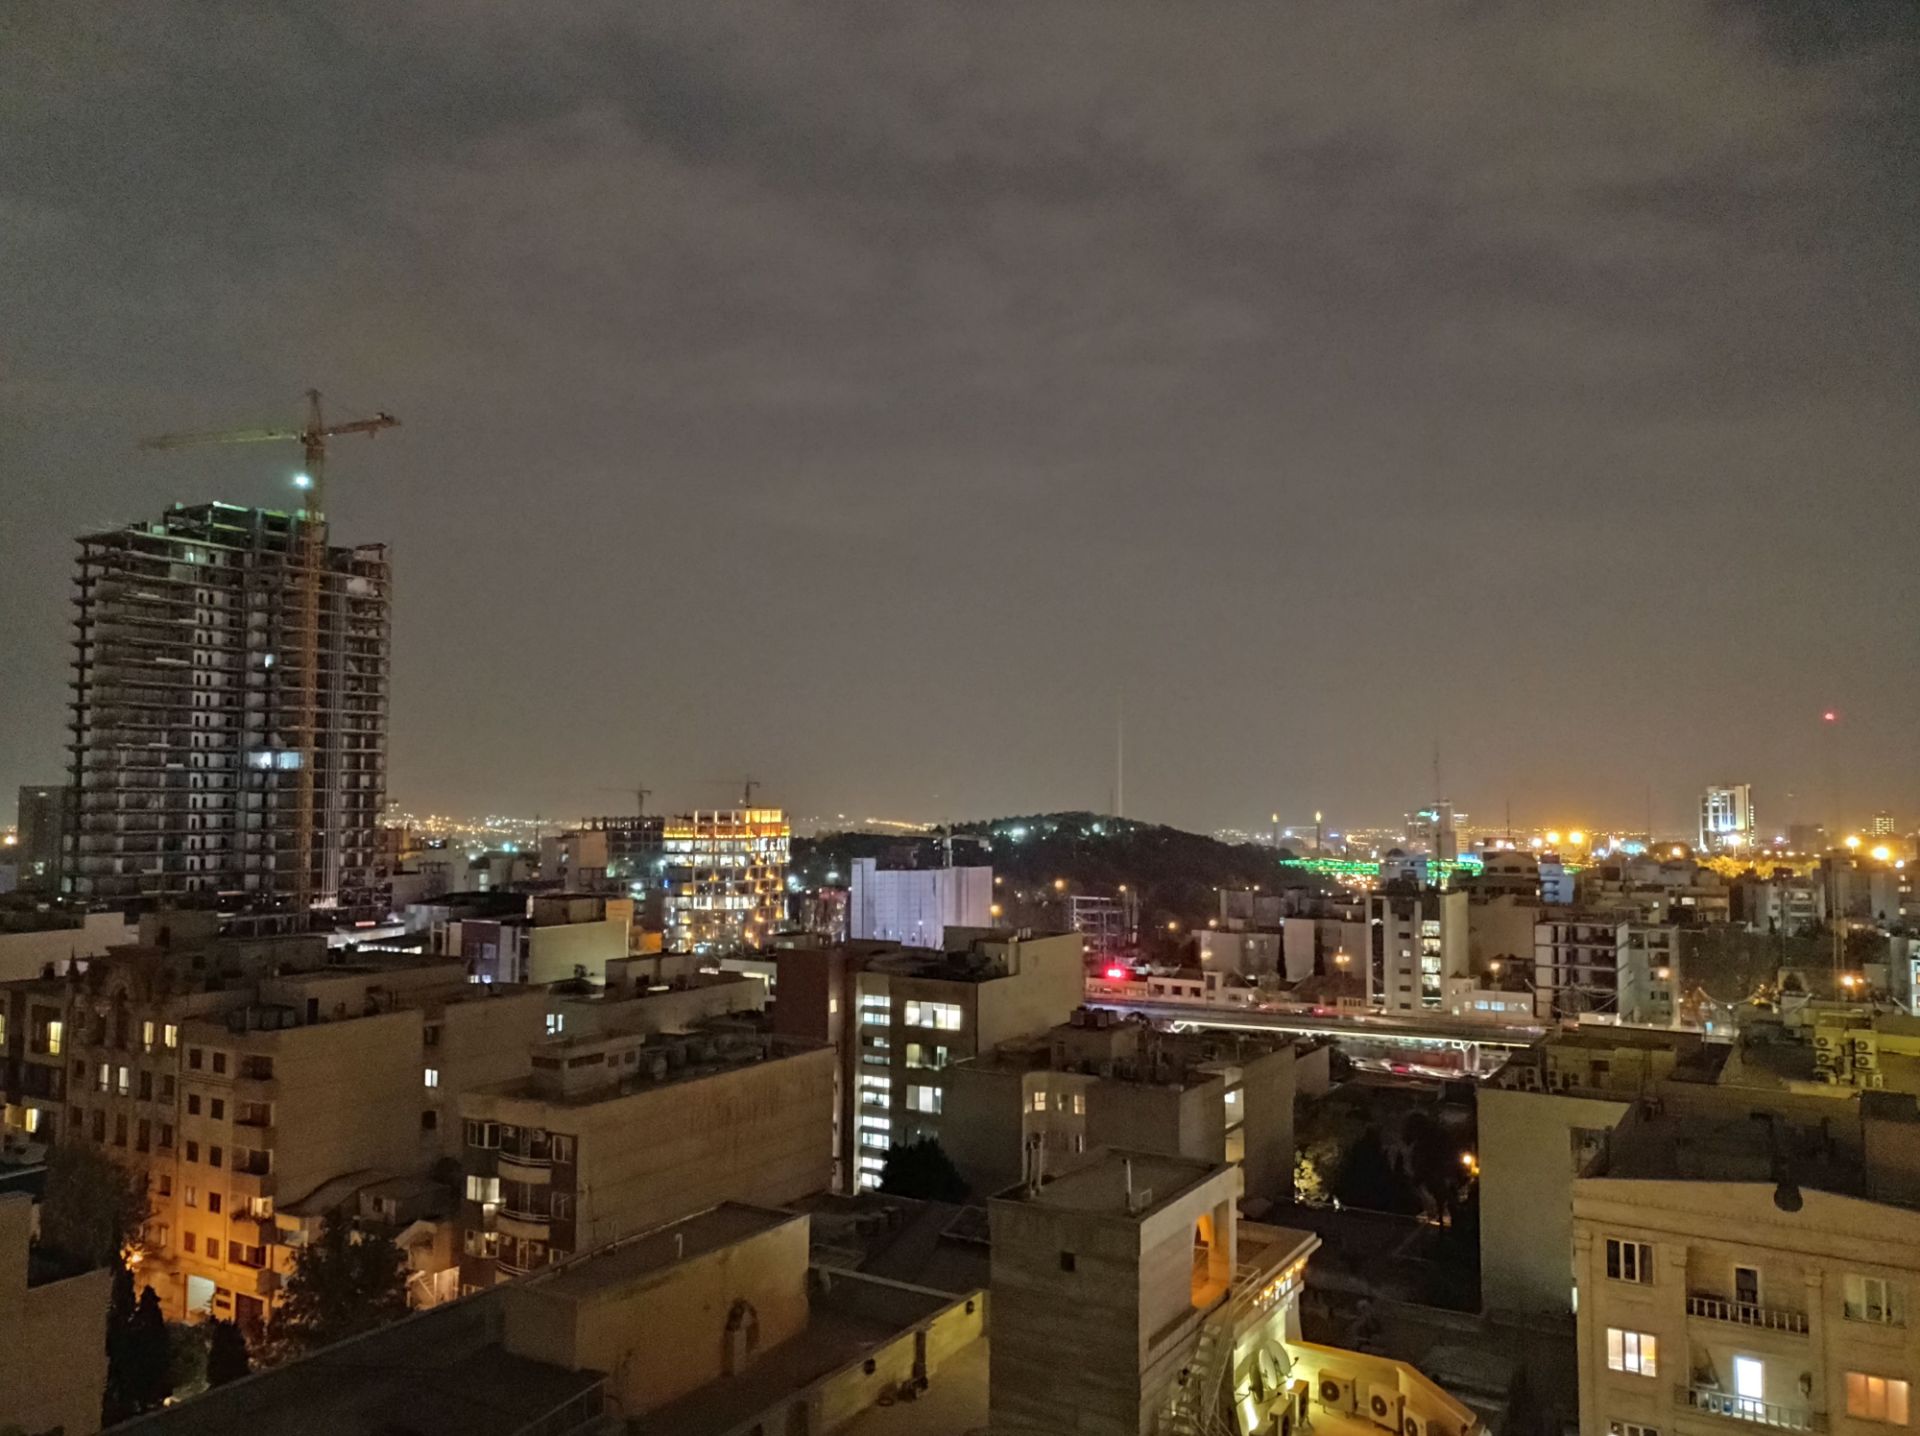 نمونه عکس 1x دوربین اصلی ردمی نوت ۹ در تاریکی - منظره تهران در شب